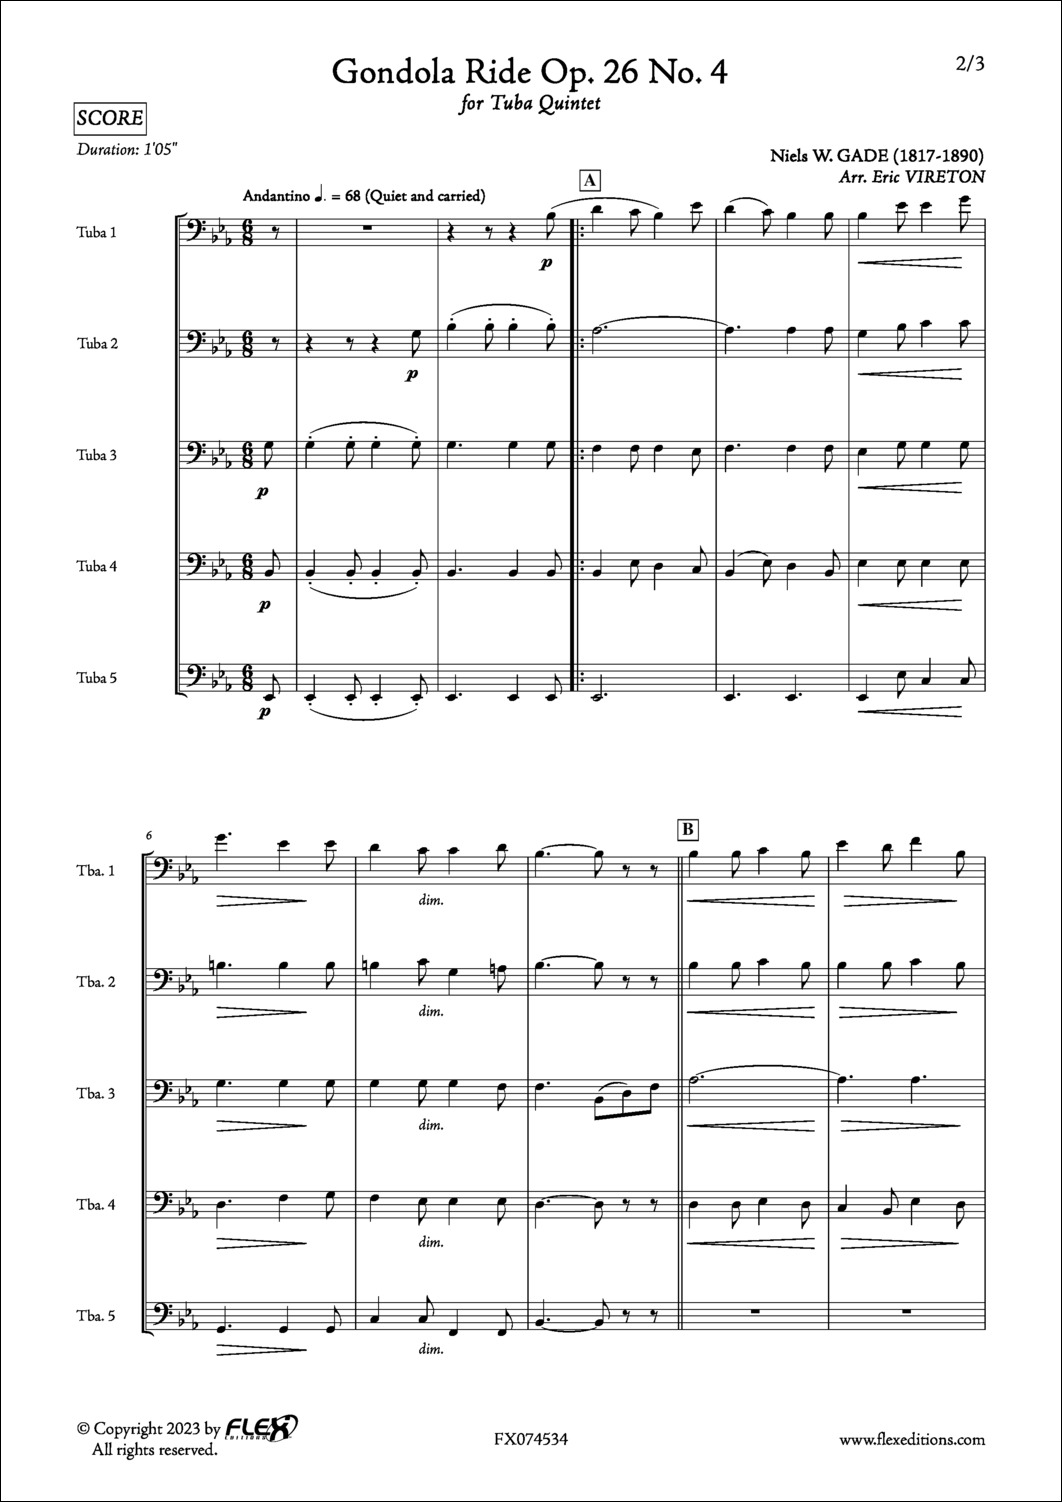 Gondola Ride Op. 26 No. 4 - N. GADE - <font color=#666666>Tuba Quintet</font>